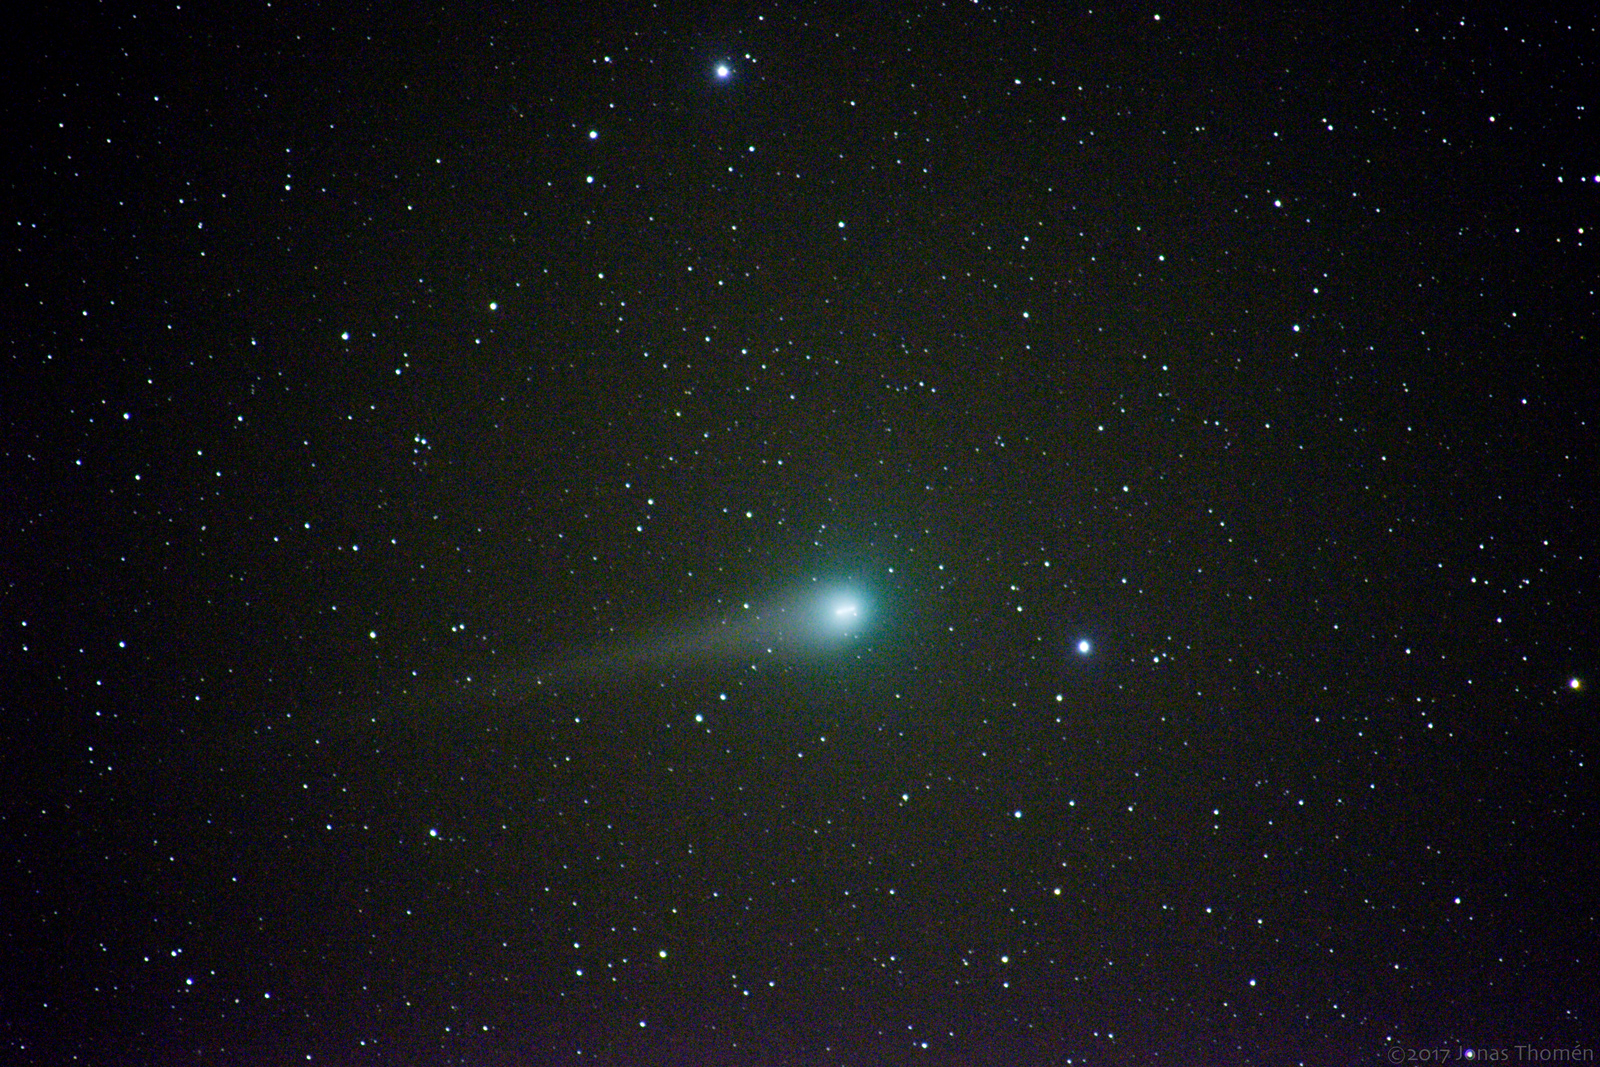 Comet C/2007 N3 Lulin